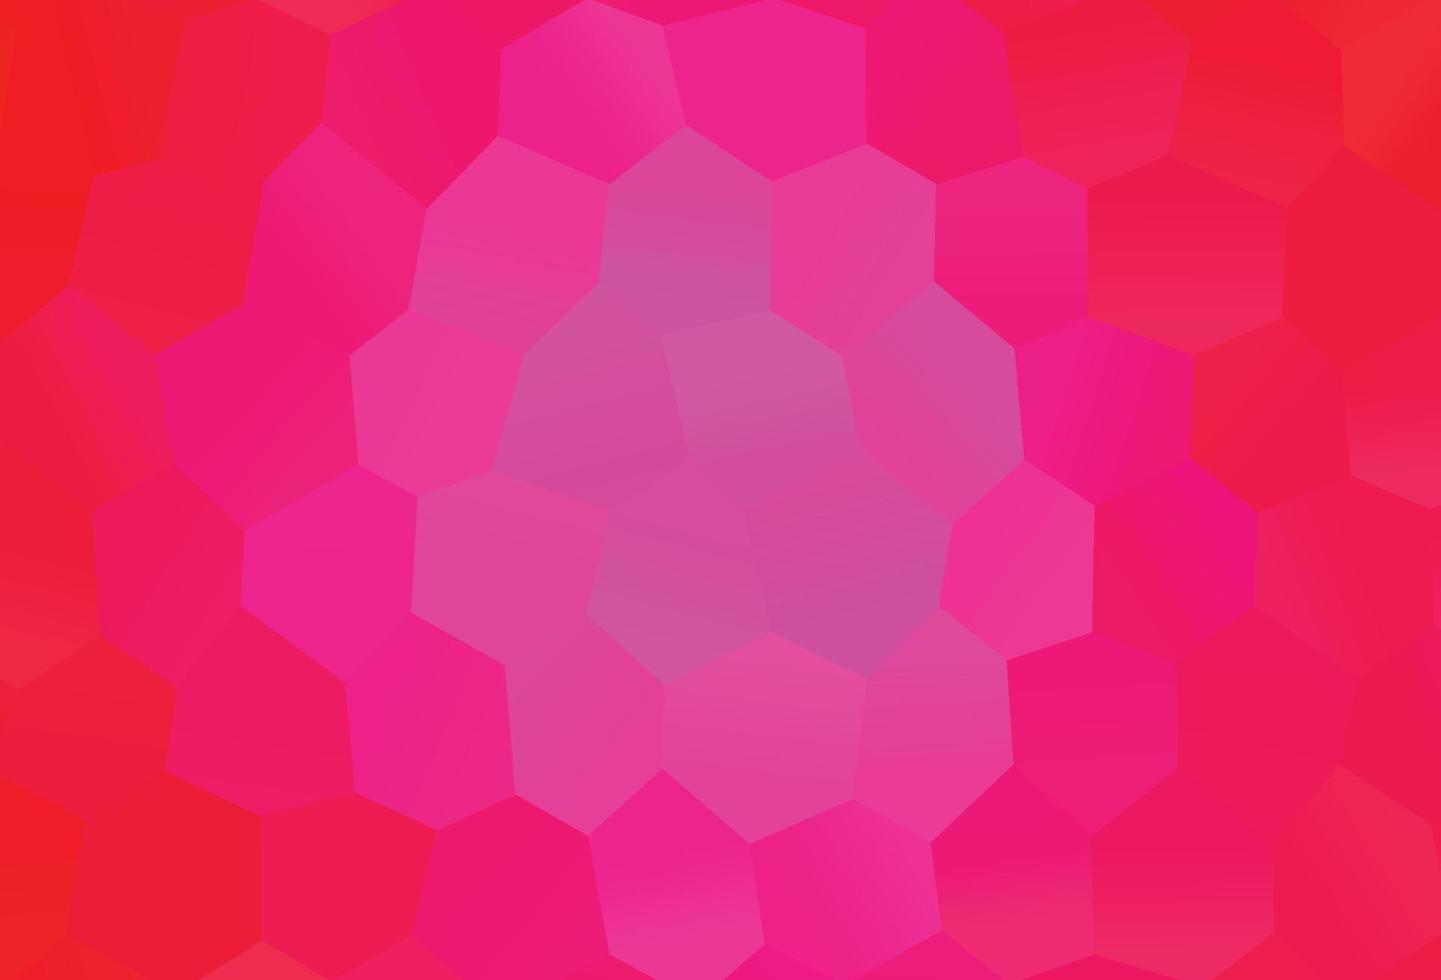 modèle vectoriel rose clair avec des hexagones colorés.